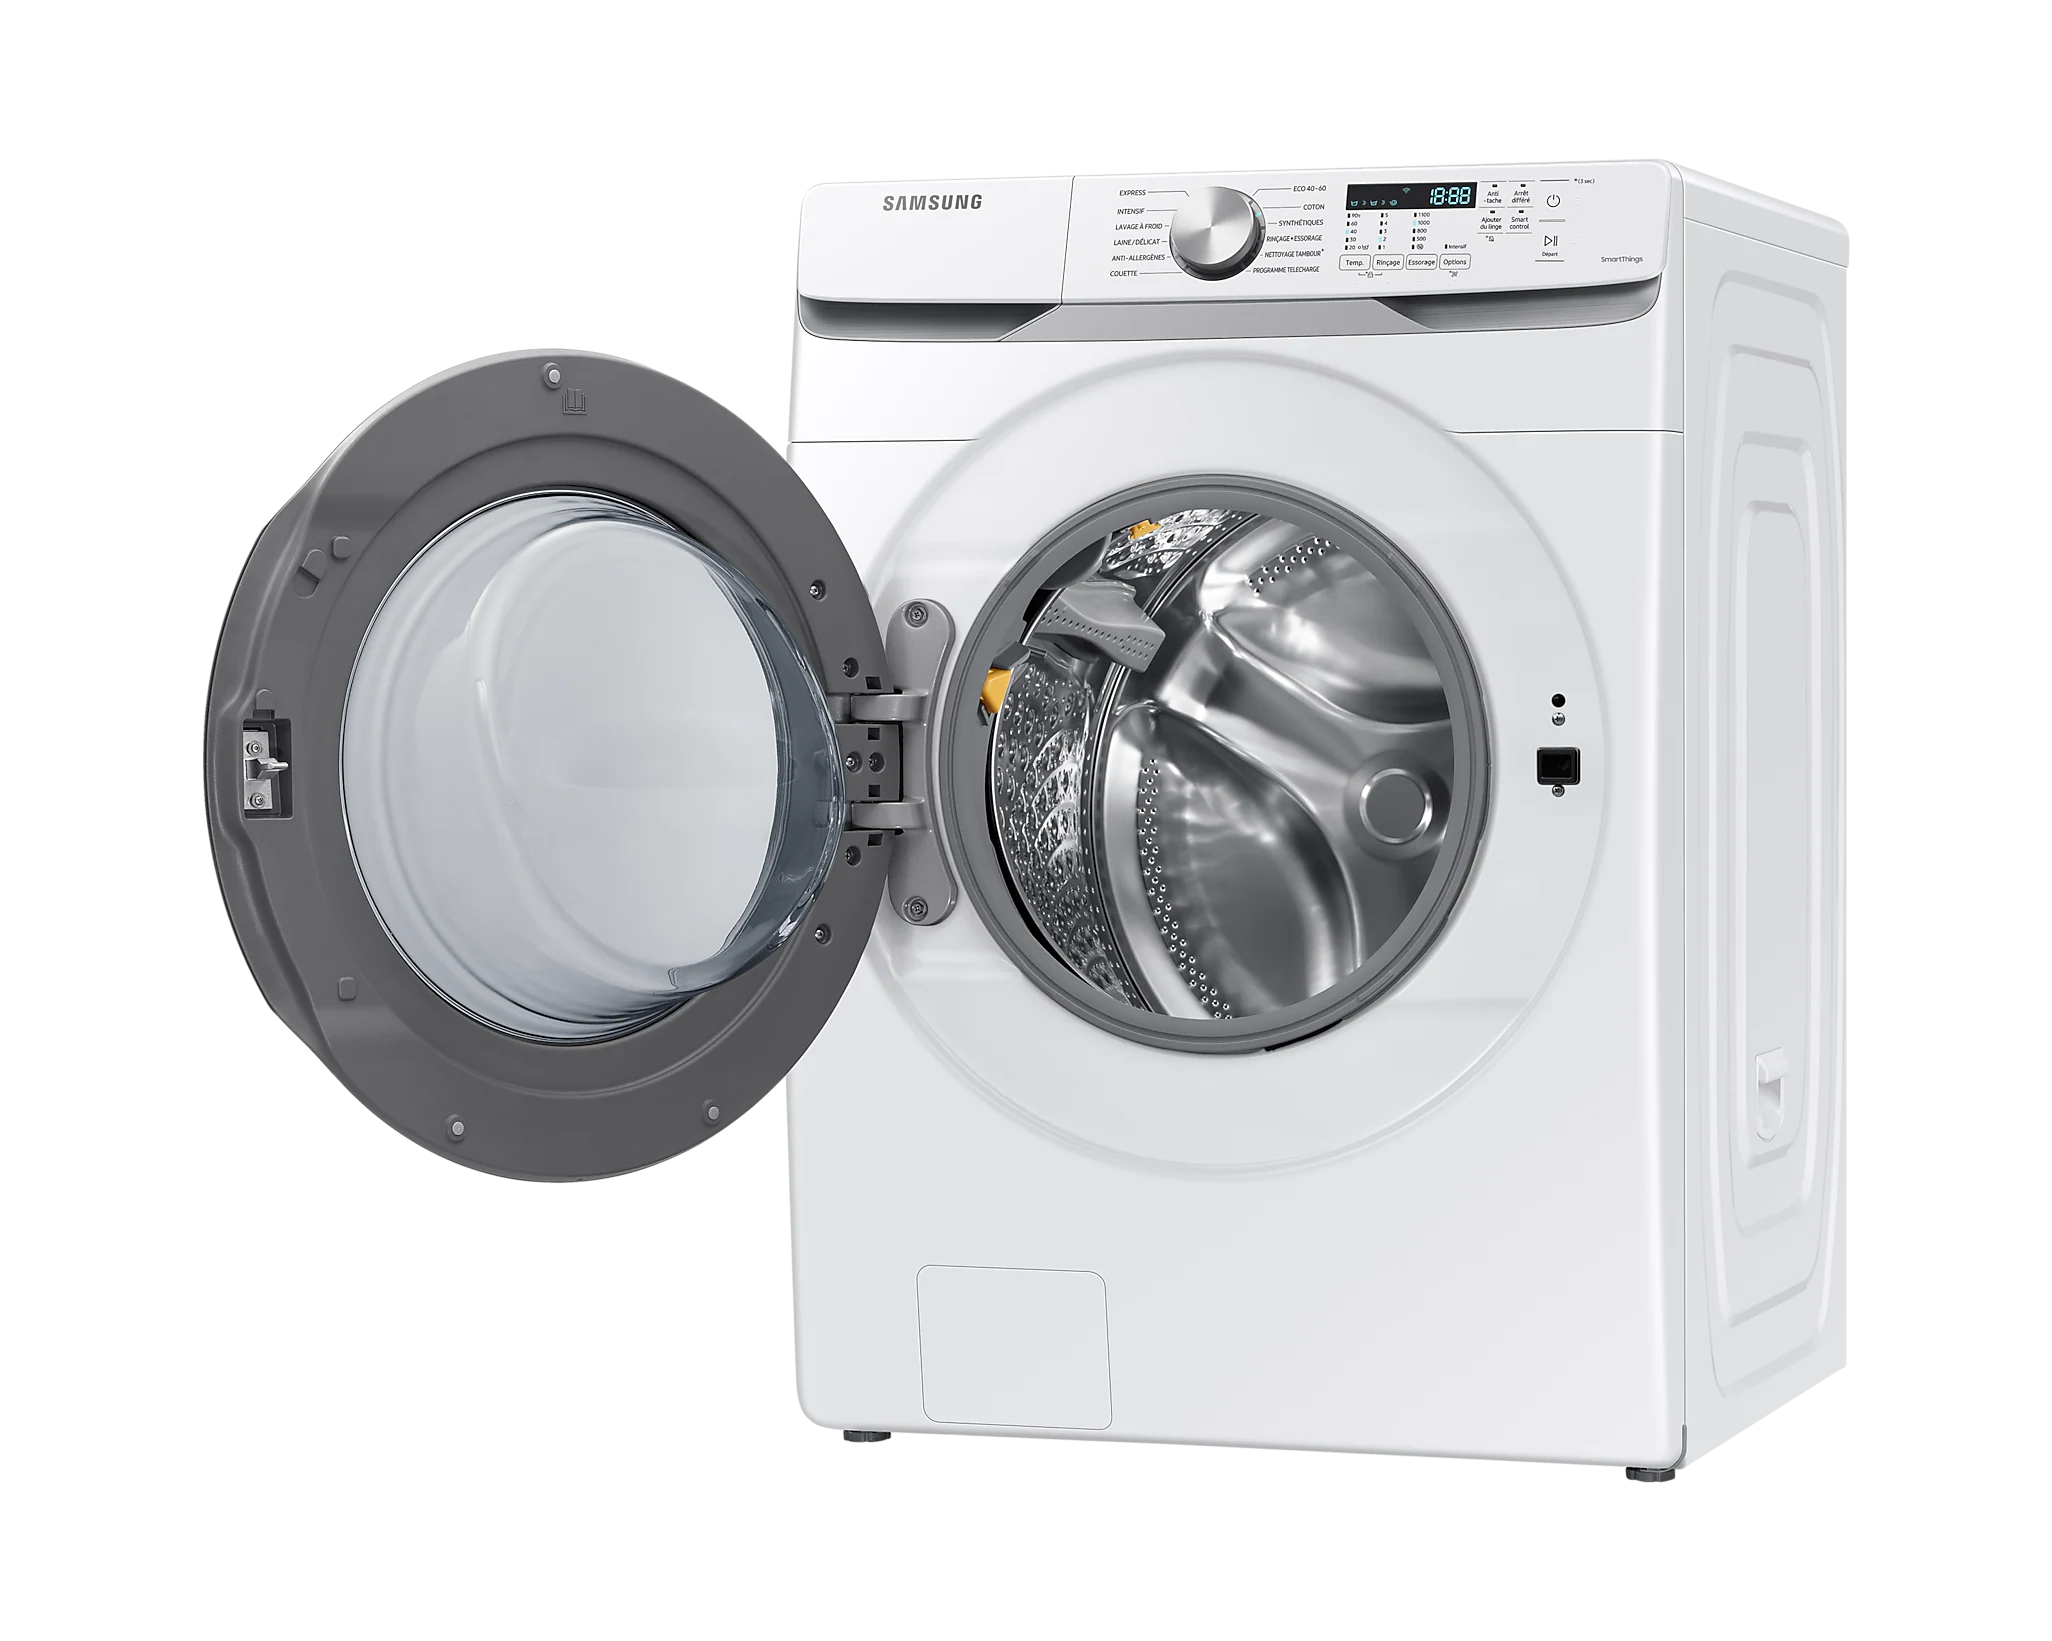 Une capacité de 18 kg pour le lave-linge Samsung WF18T8000GW - Les  Numériques